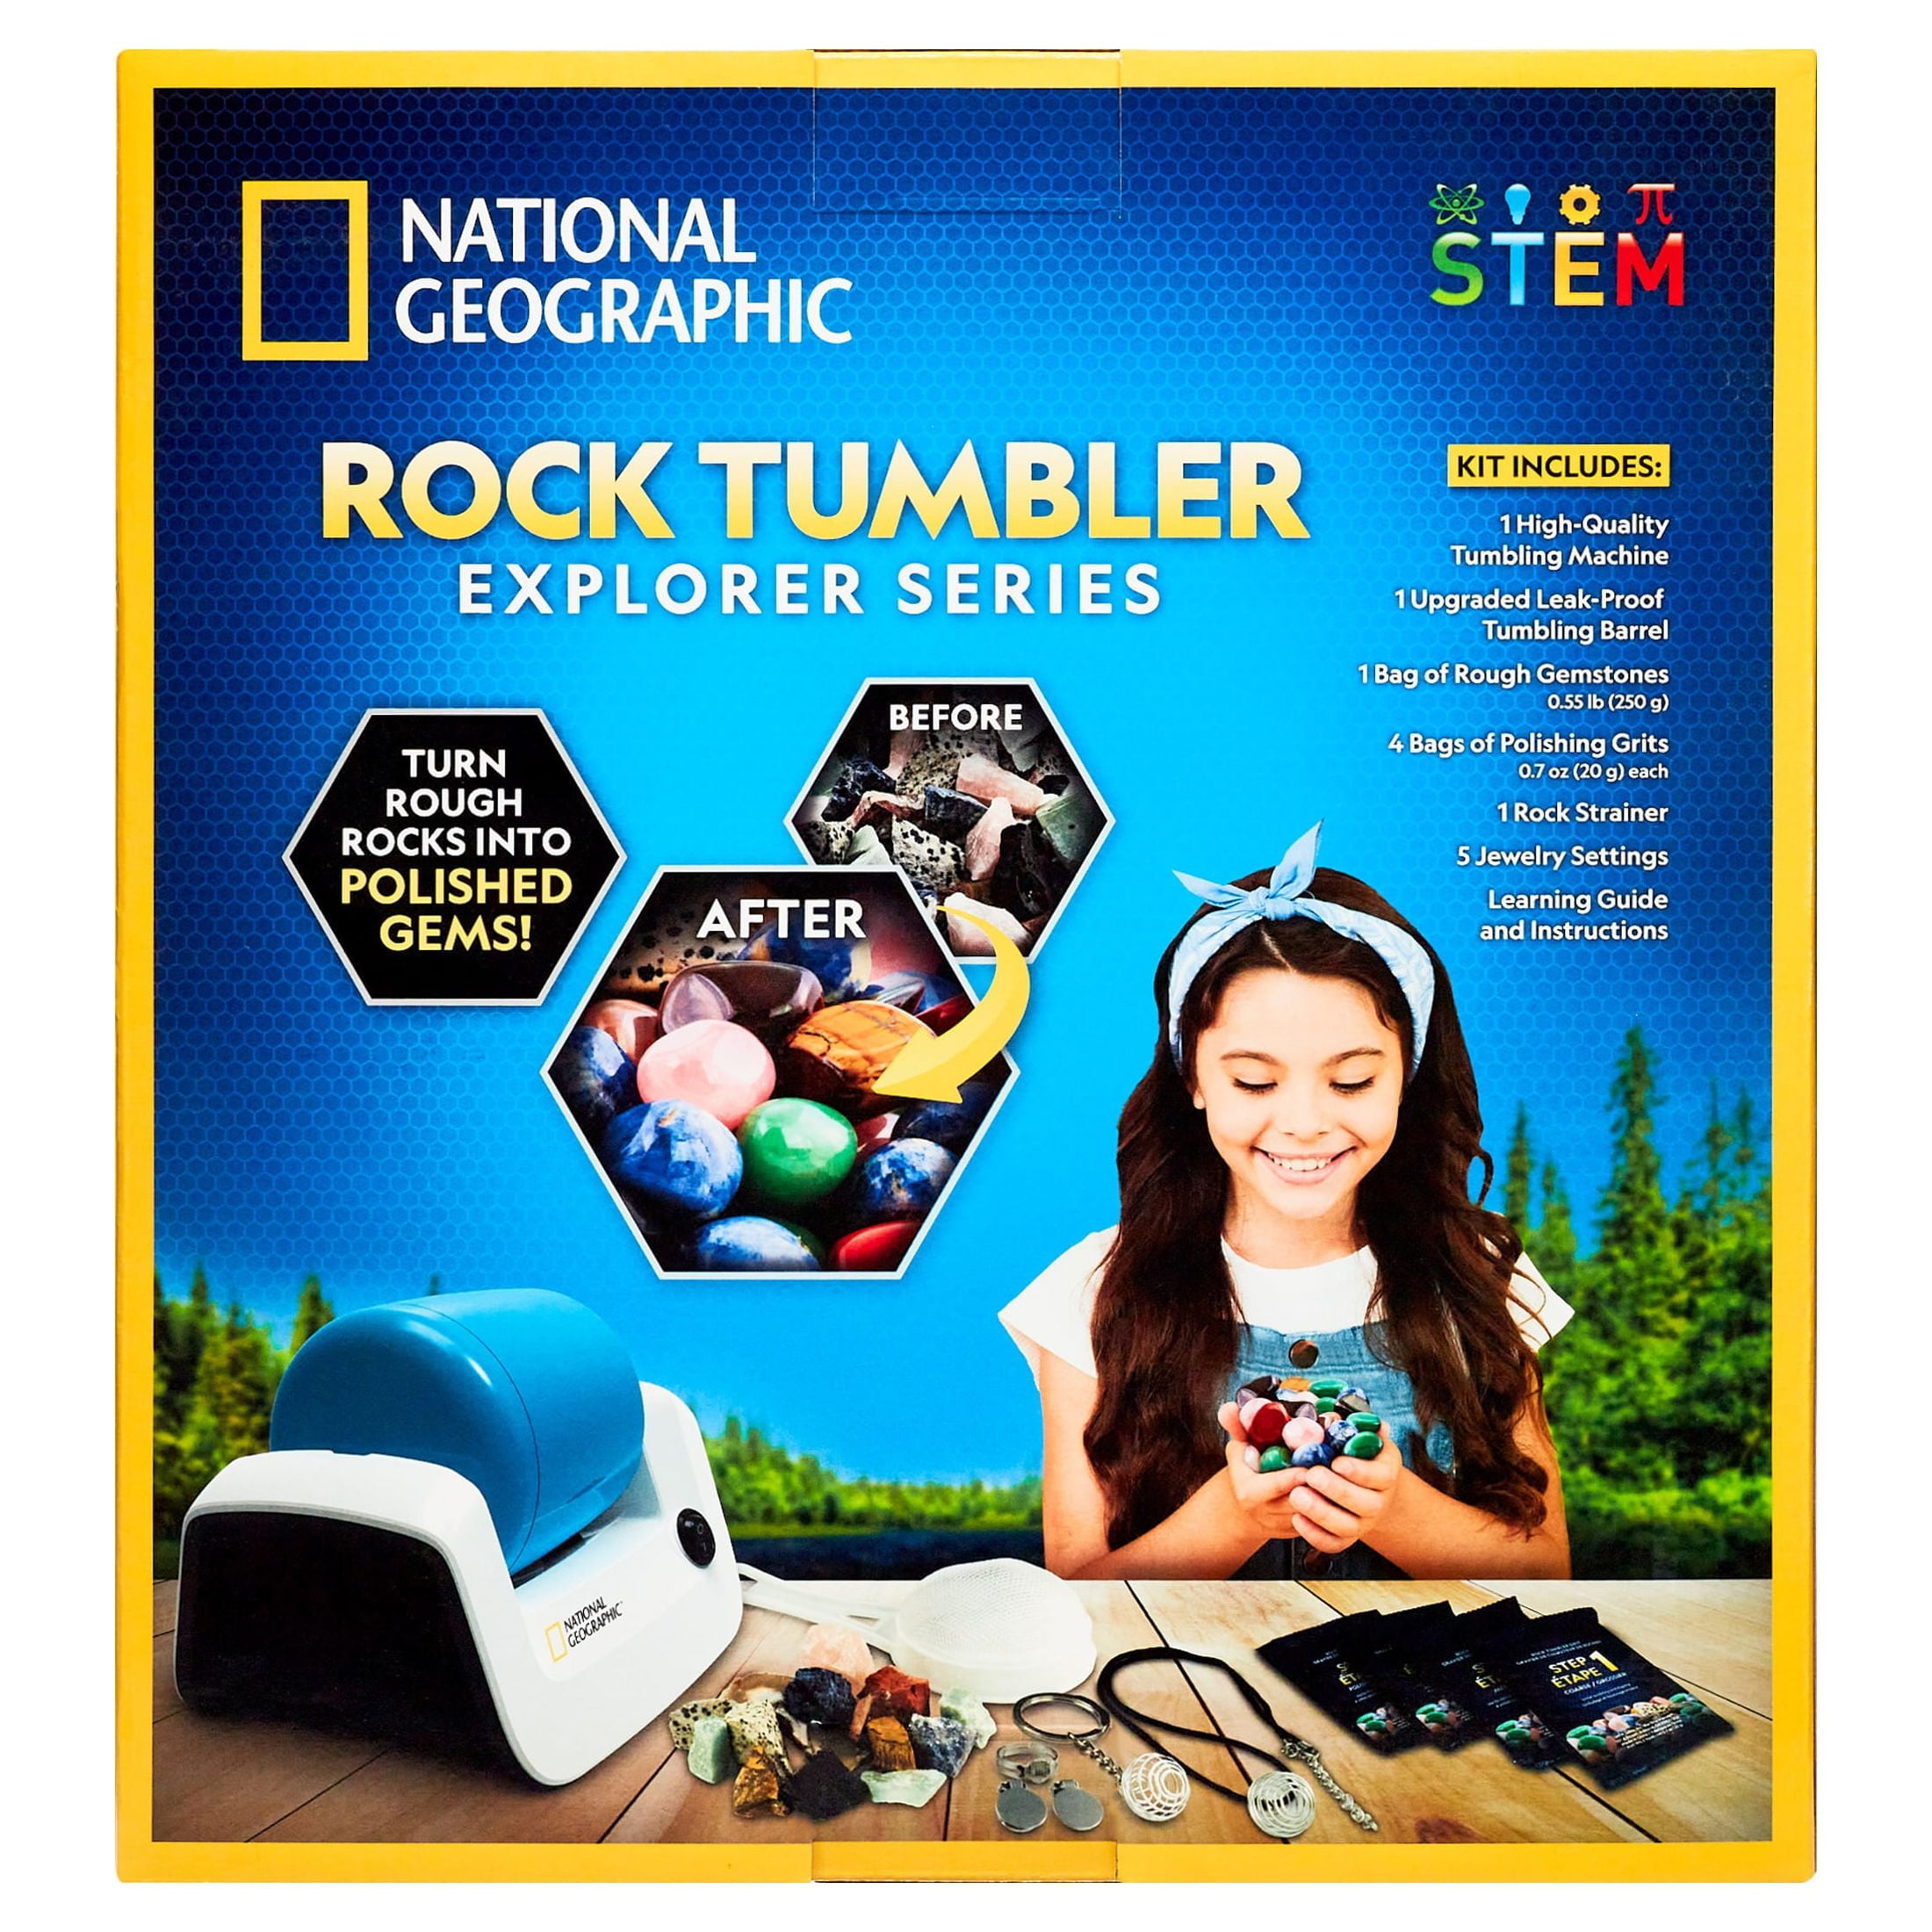 National Geographic Starter Rock Tumbler Kit